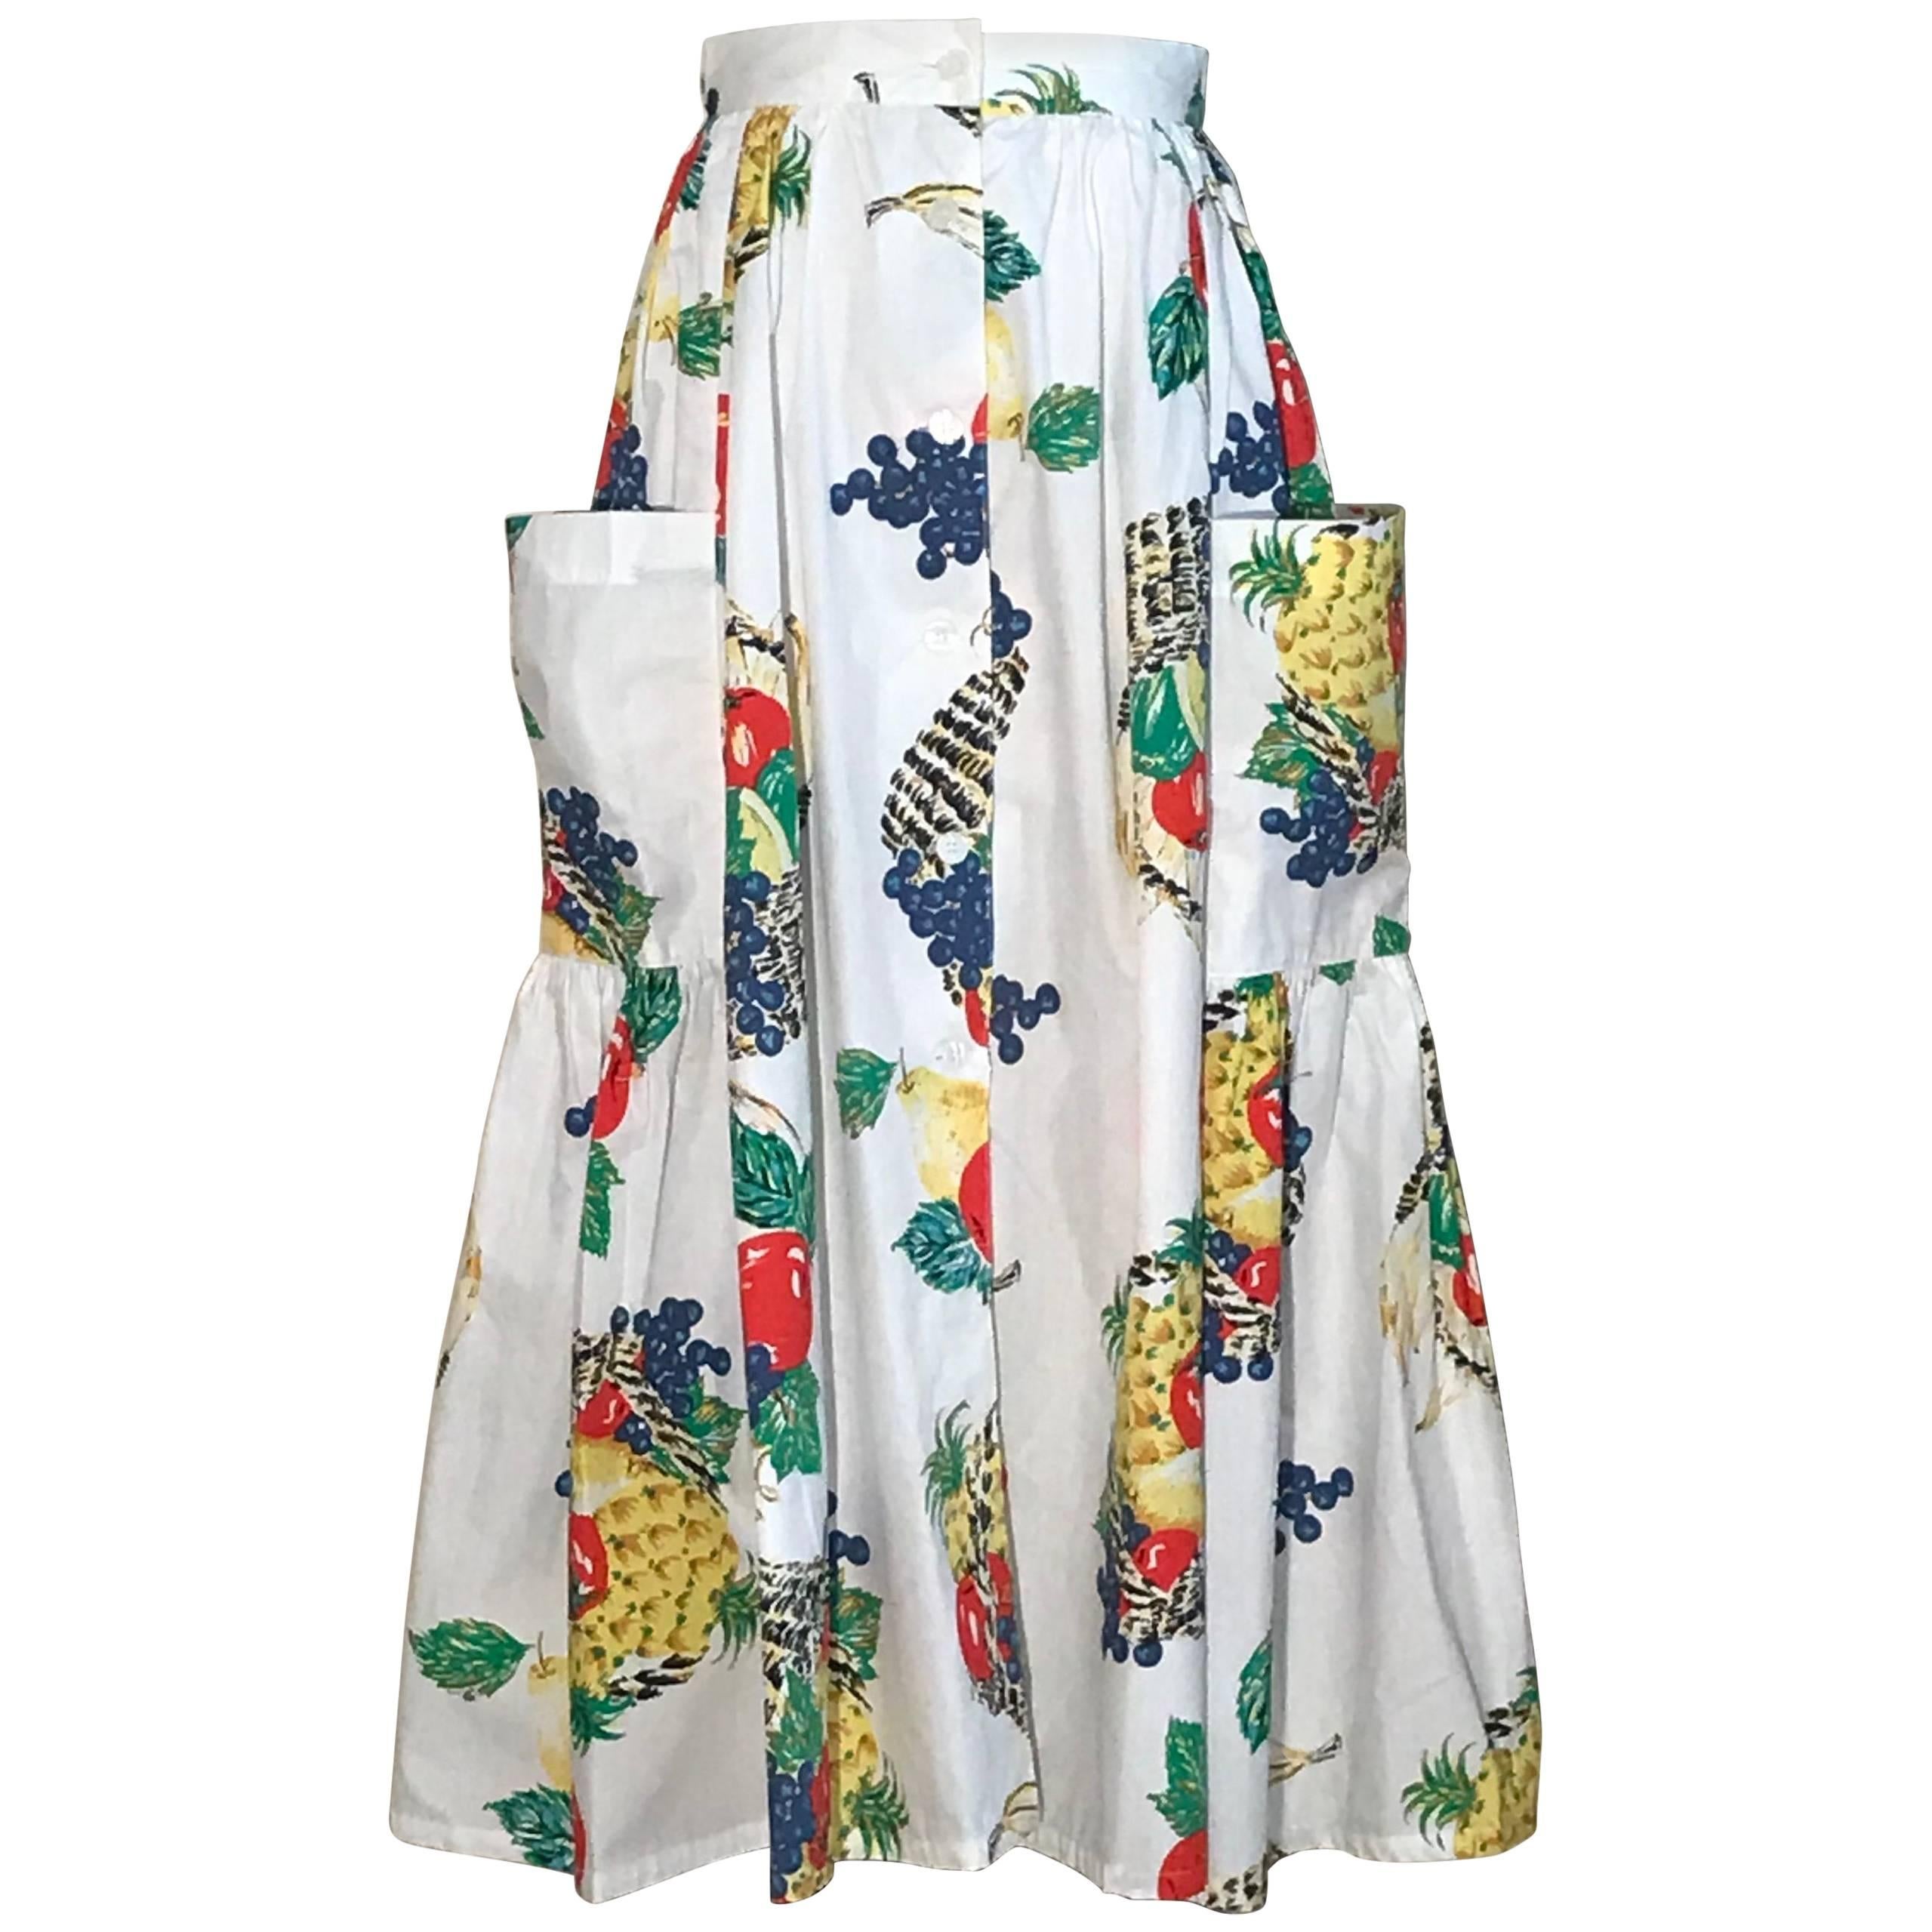 New Emanuelle 1980s Pineapple Grape Fruit Basket Print White Cotton Full Skirt 